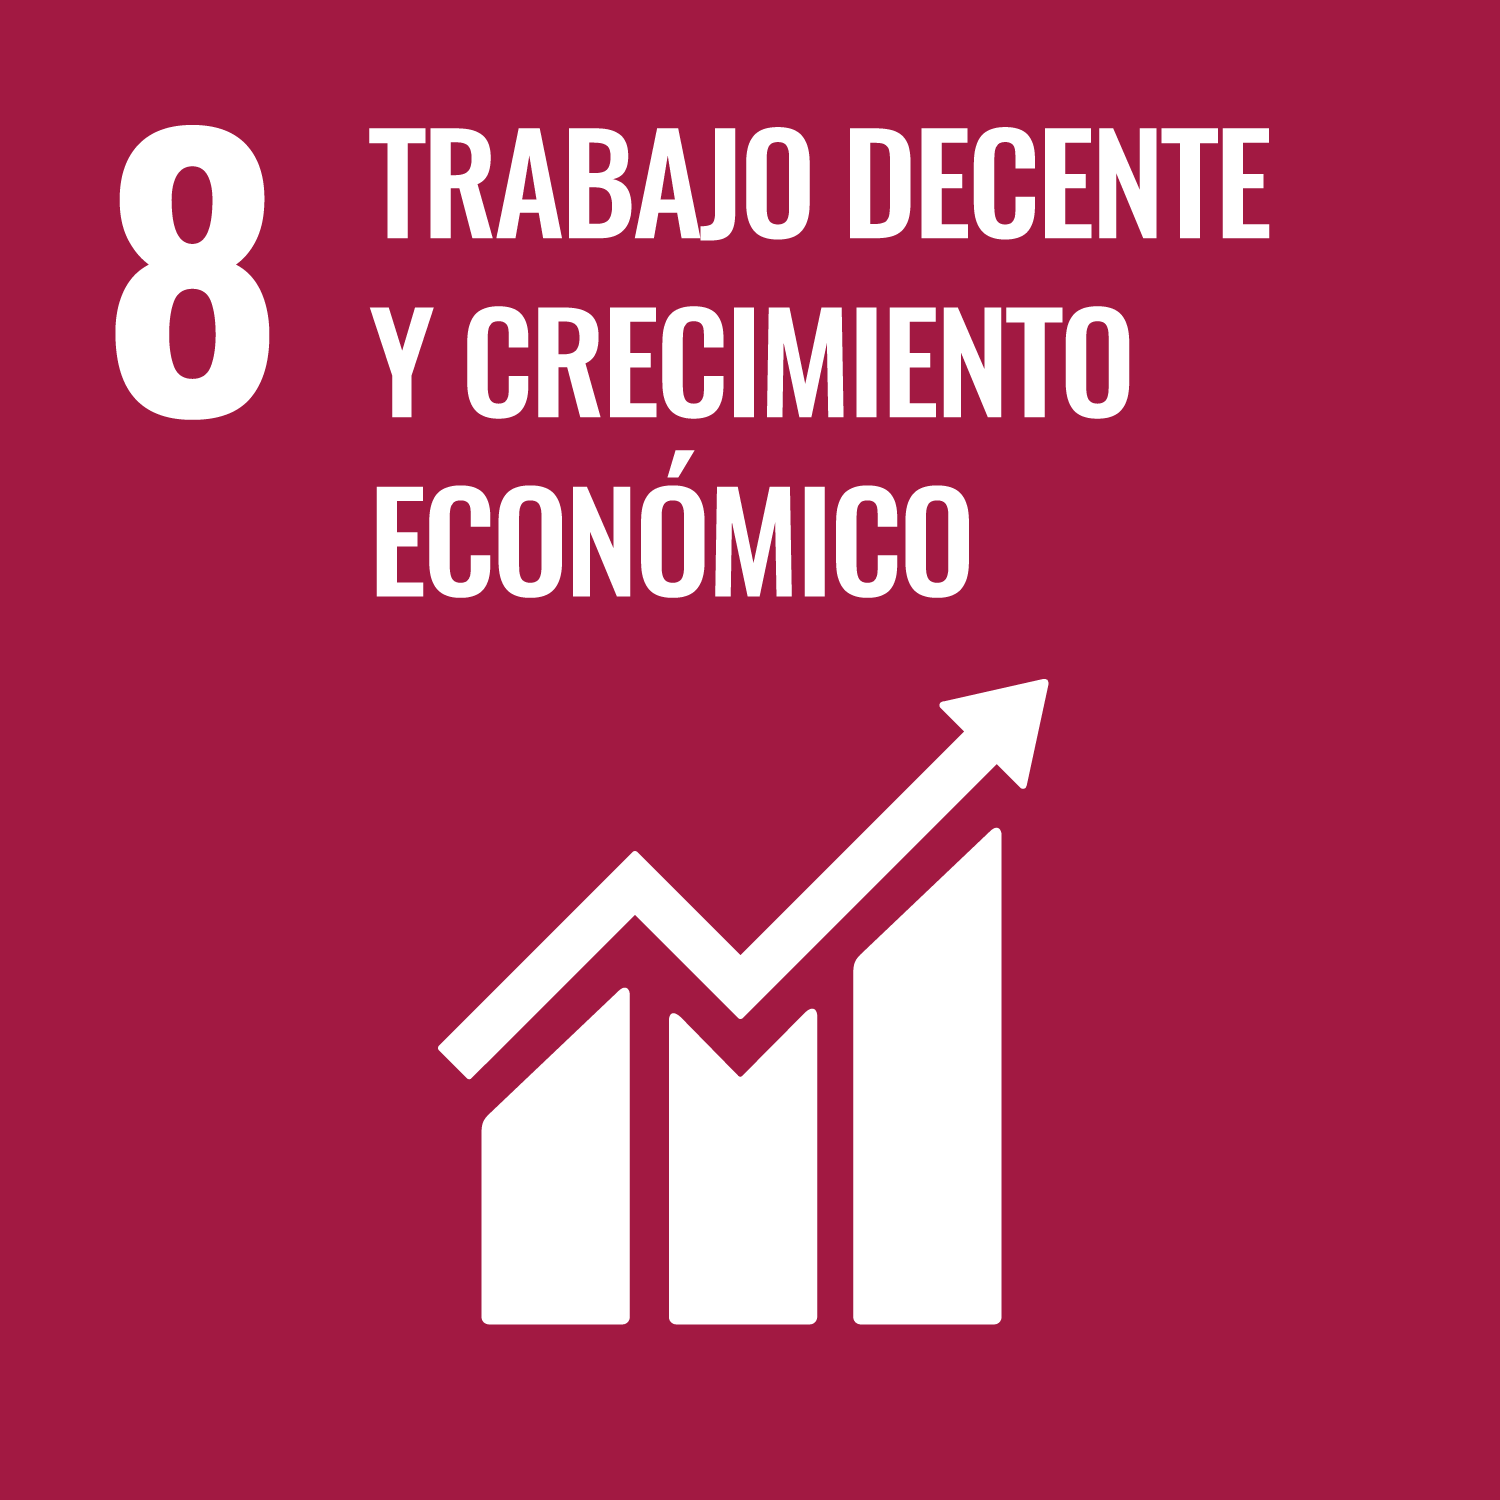 ODS 8: El crecimiento económico y su difícil encaje en la Agenda 2030, por Jorge Gutiérrez y Andrés Fernando